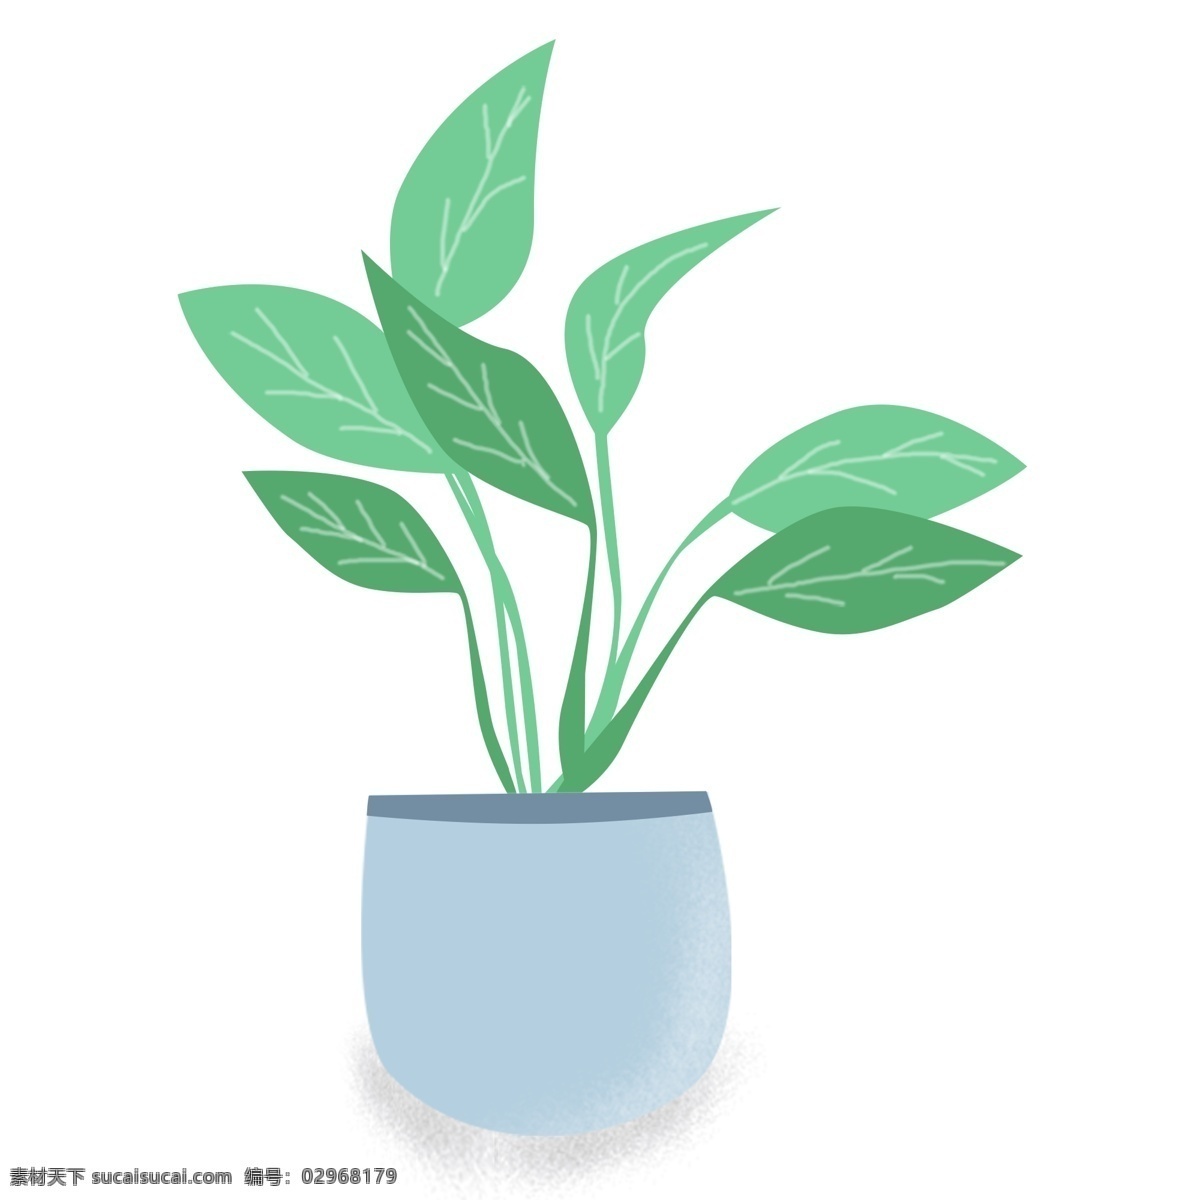 卡通 手绘 盆栽 插画 免扣素材 透明素材 卡通素材 可爱 植物 清新